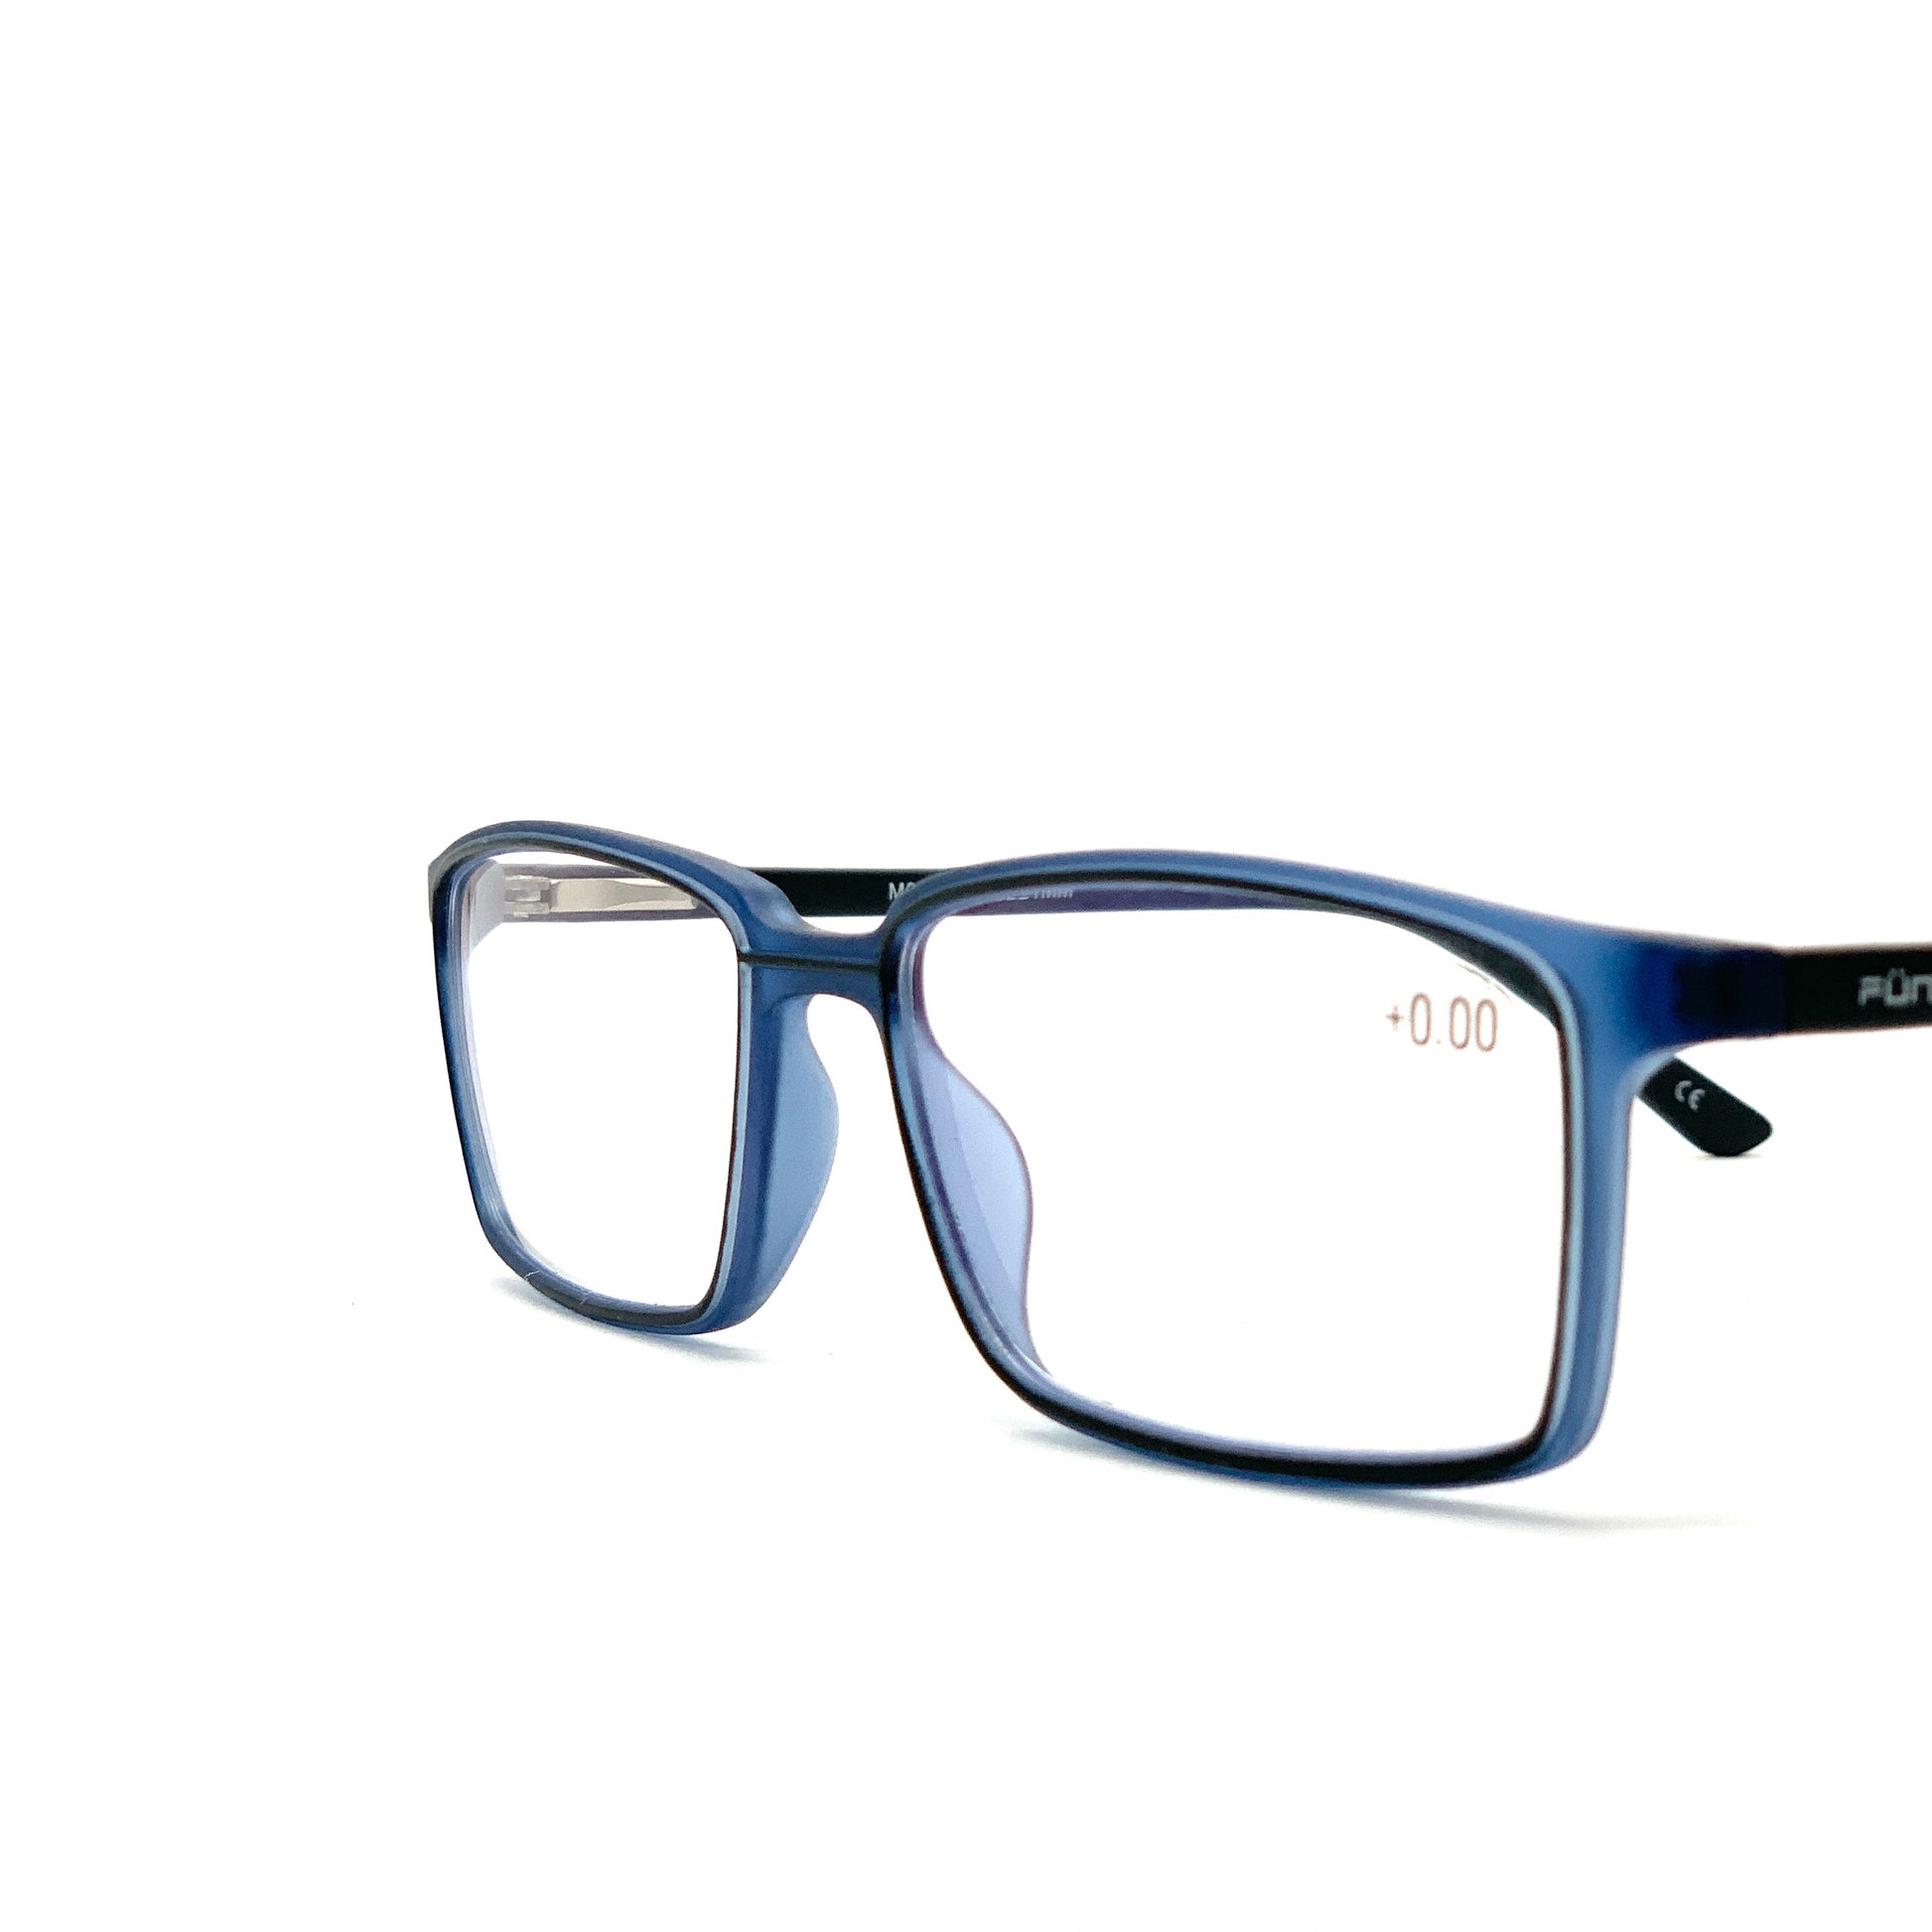 Gafas estenopeicas para ejercicios oculares trainer - Tienda Fisaude